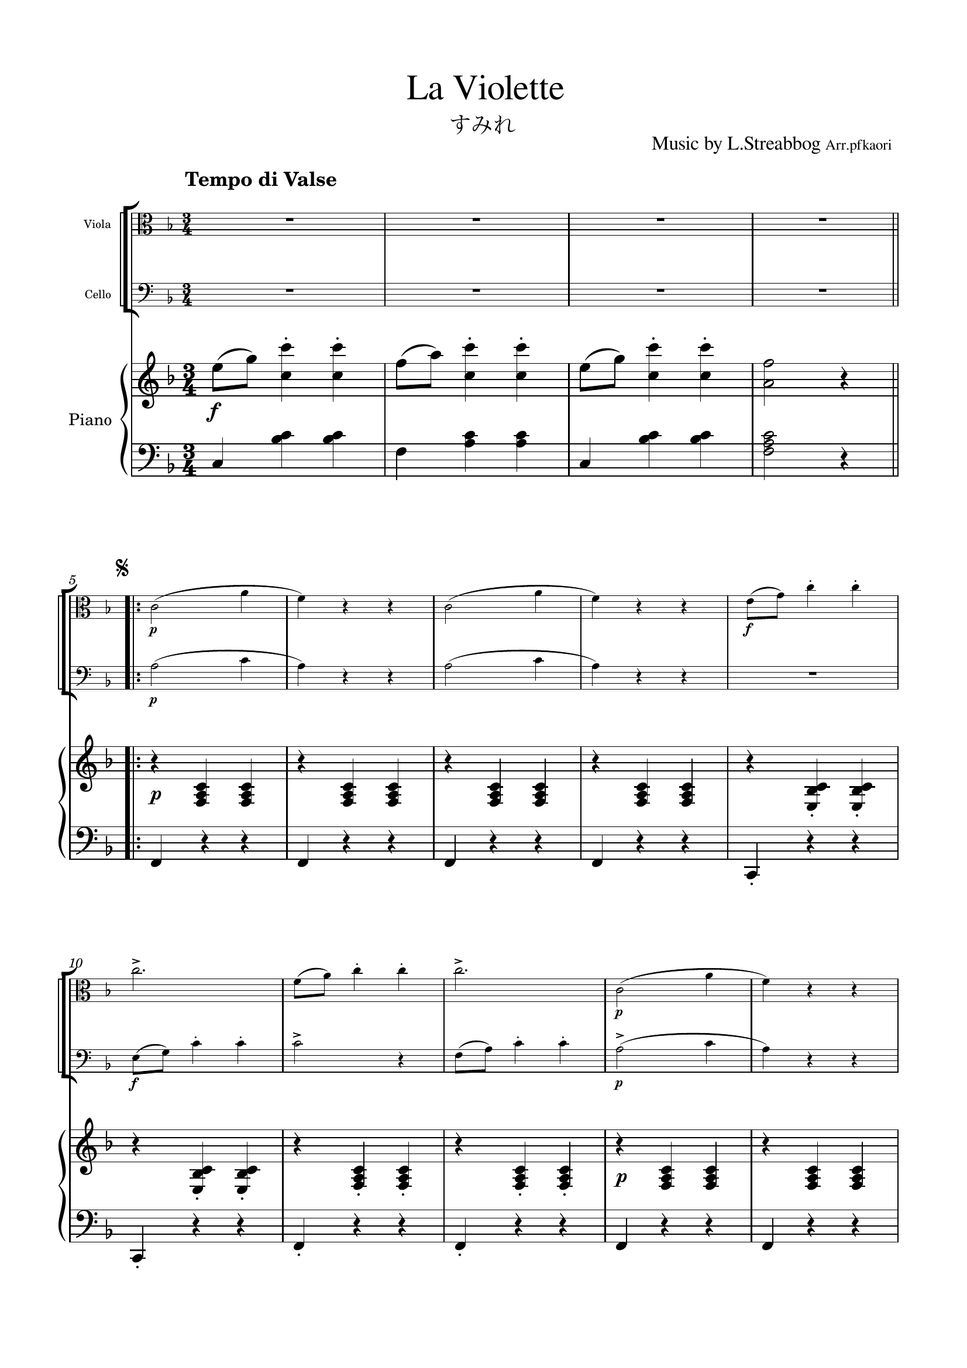 Strea bogg - La Violette (Piano trio / Viola & Cello) by pfkaori